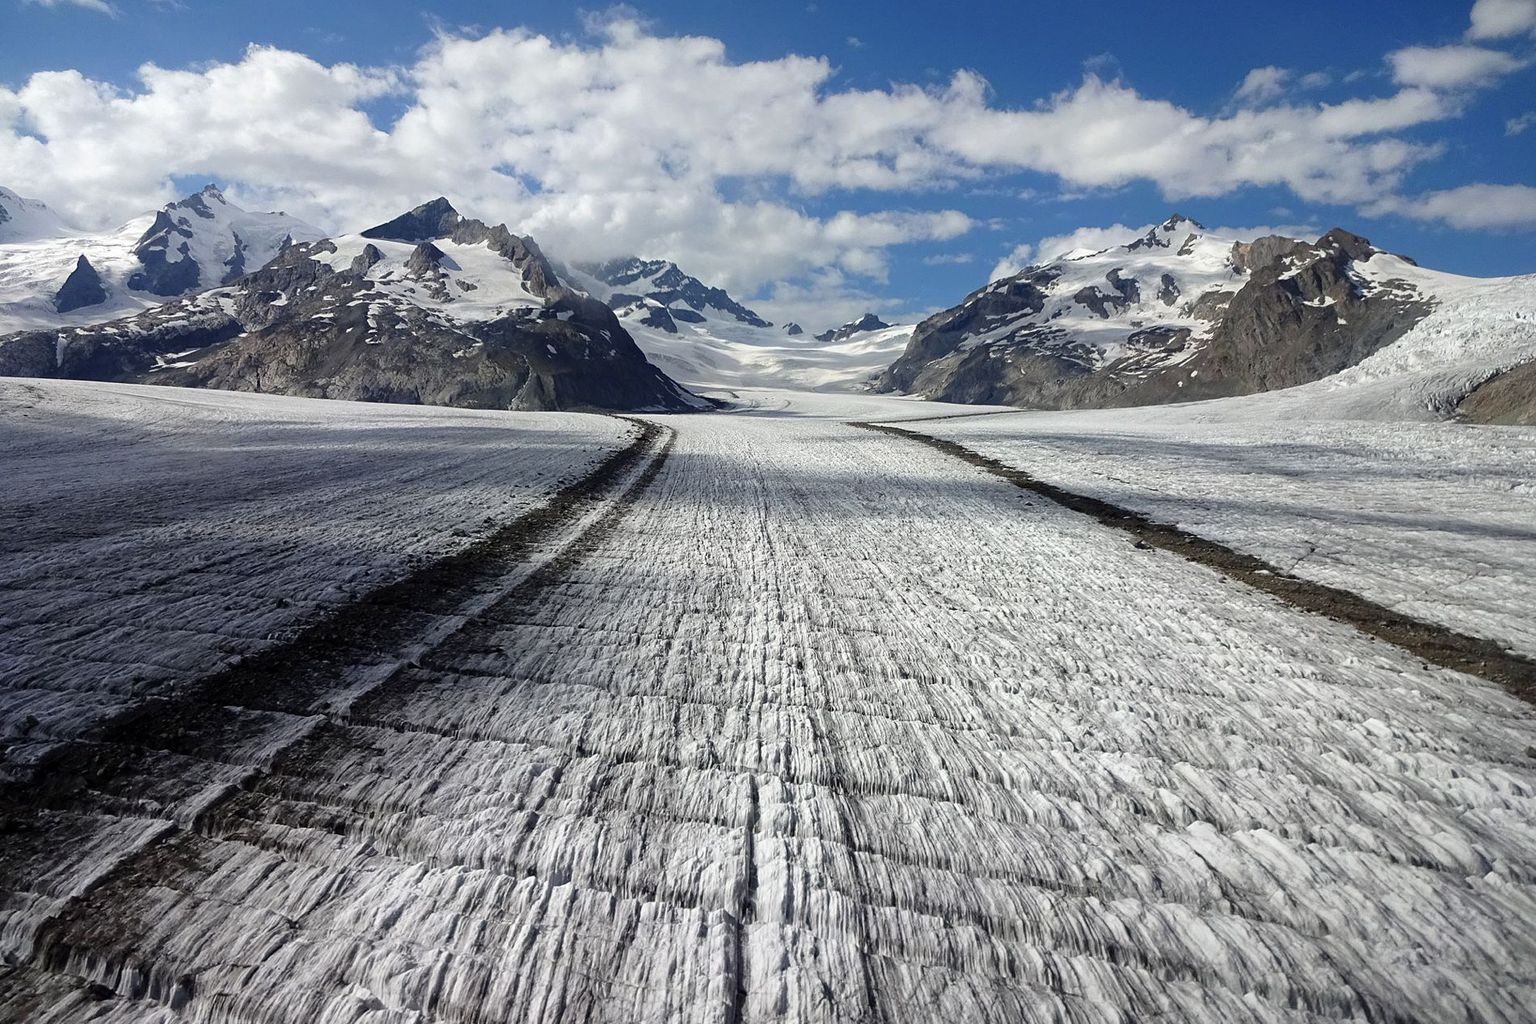 Der Konkordiaplatz auf dem Grossen Aletschgletscher (VS) beeindruckt durch seine Weite. Eine Eisschicht von 2-3 Metern schmolz im Sommer 2021 hier ab.